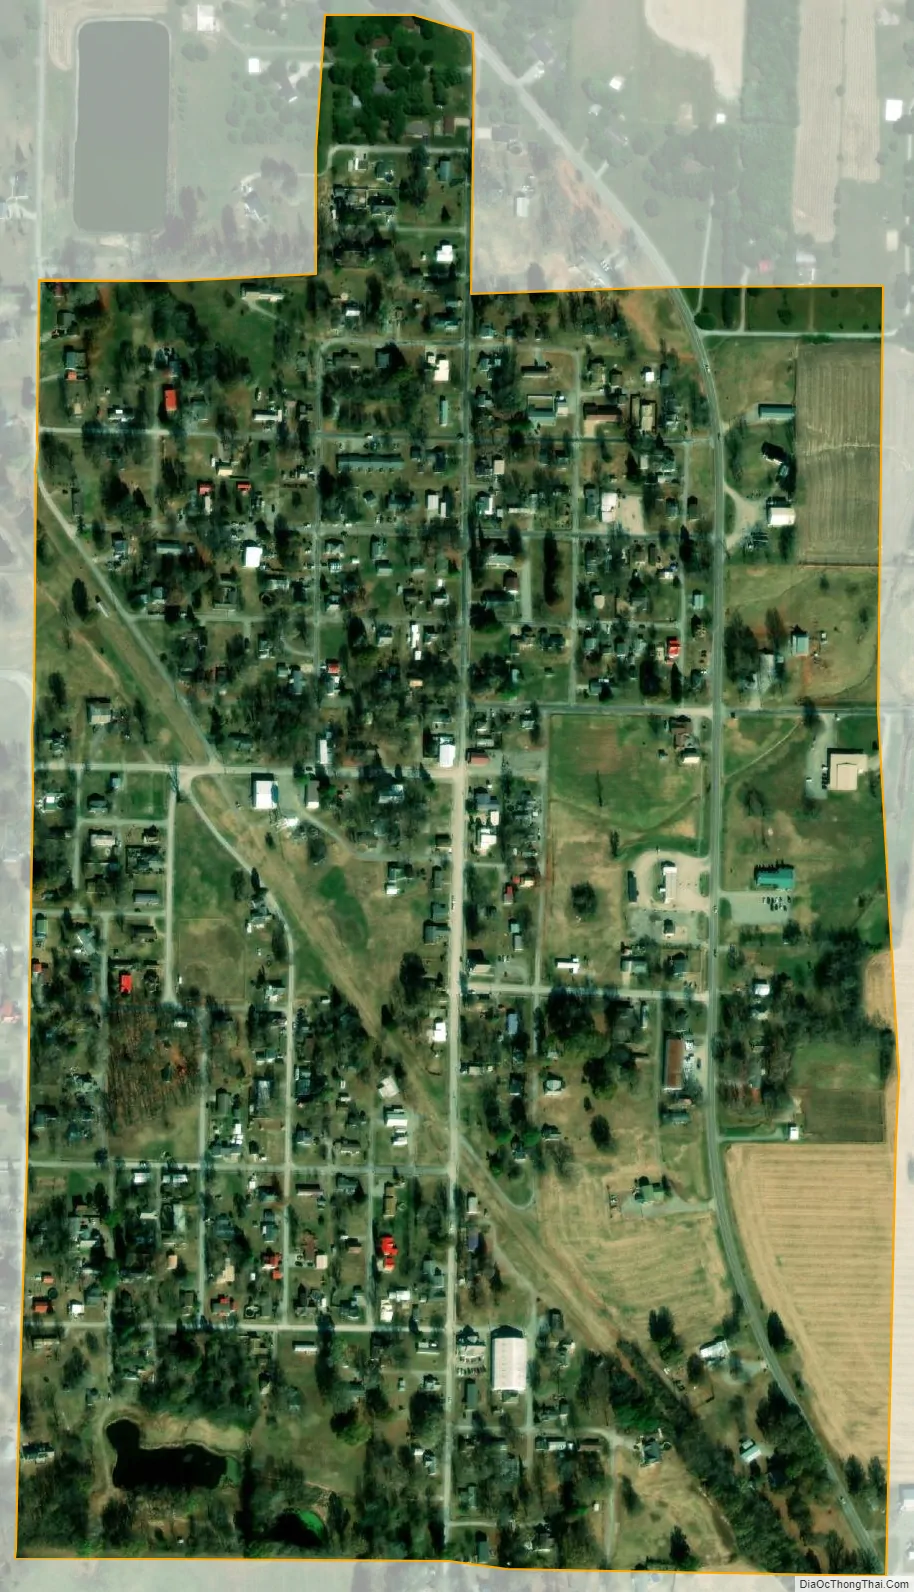 Map of Willisville village, Illinois